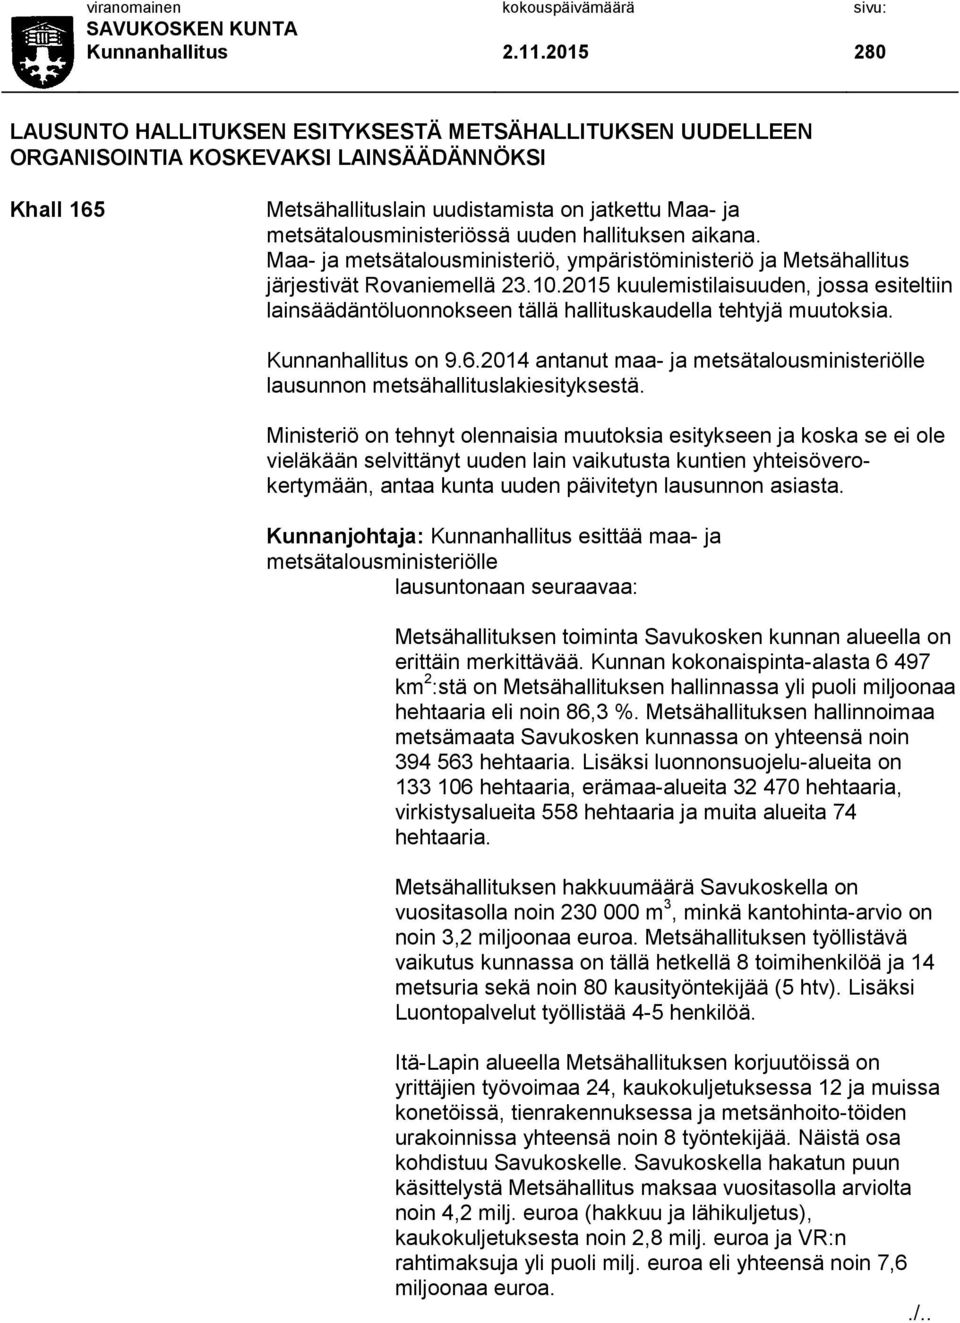 uuden hallituksen aikana. Maa- ja metsätalousministeriö, ympäristöministeriö ja Metsähallitus järjestivät Rovaniemellä 23.10.